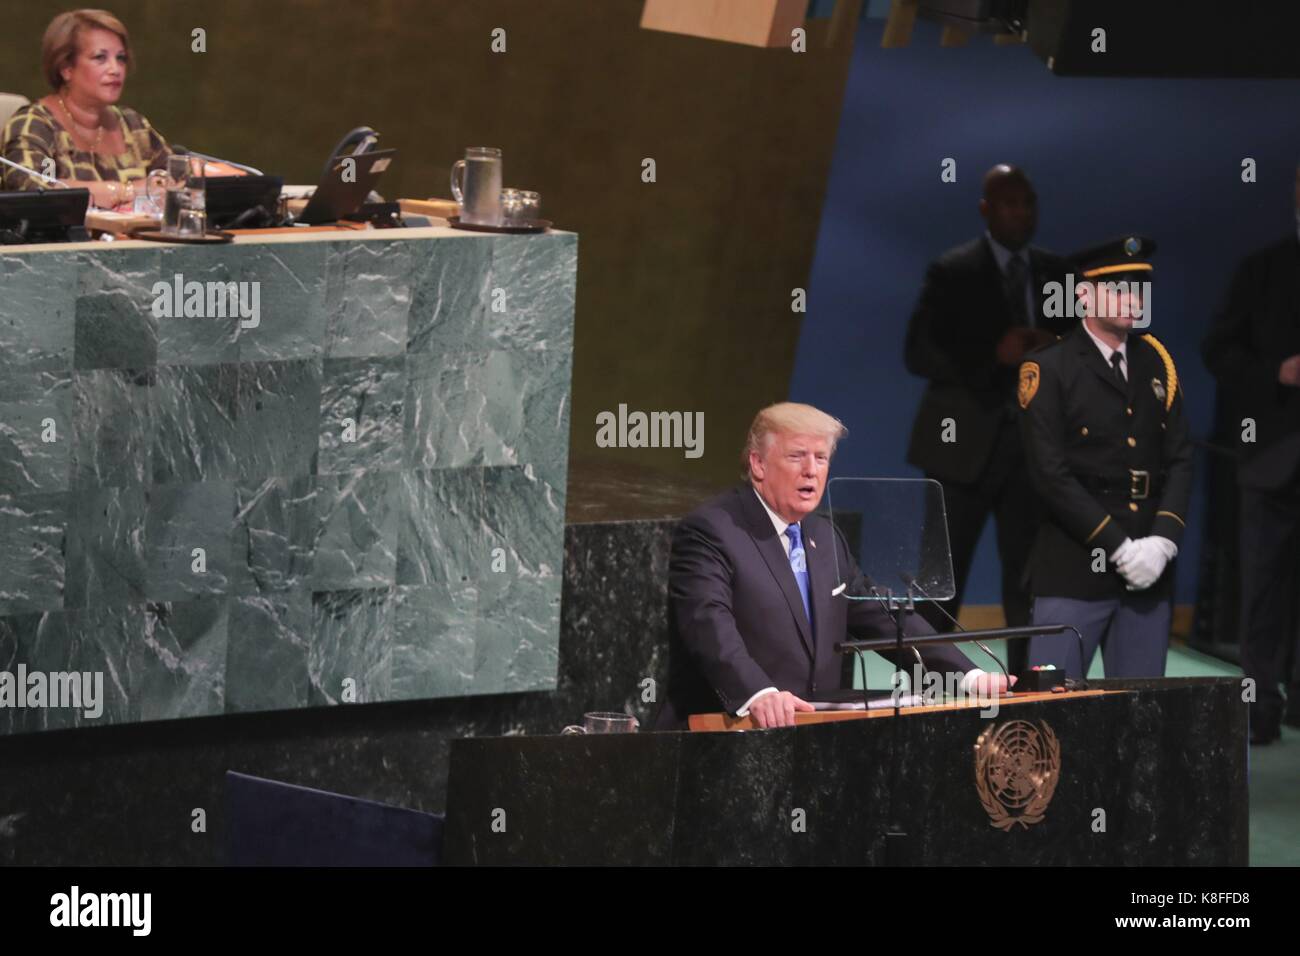 Organisation des Nations Unies, New York, USA, 19 septembre 2017 - Le président américain, Donald Trump, prendre la parole à la 72e assemblée générale aujourd'hui au siège des Nations unies à New York. photo : Luiz rampelotto/europanewswire dans le monde d'utilisation | Banque D'Images